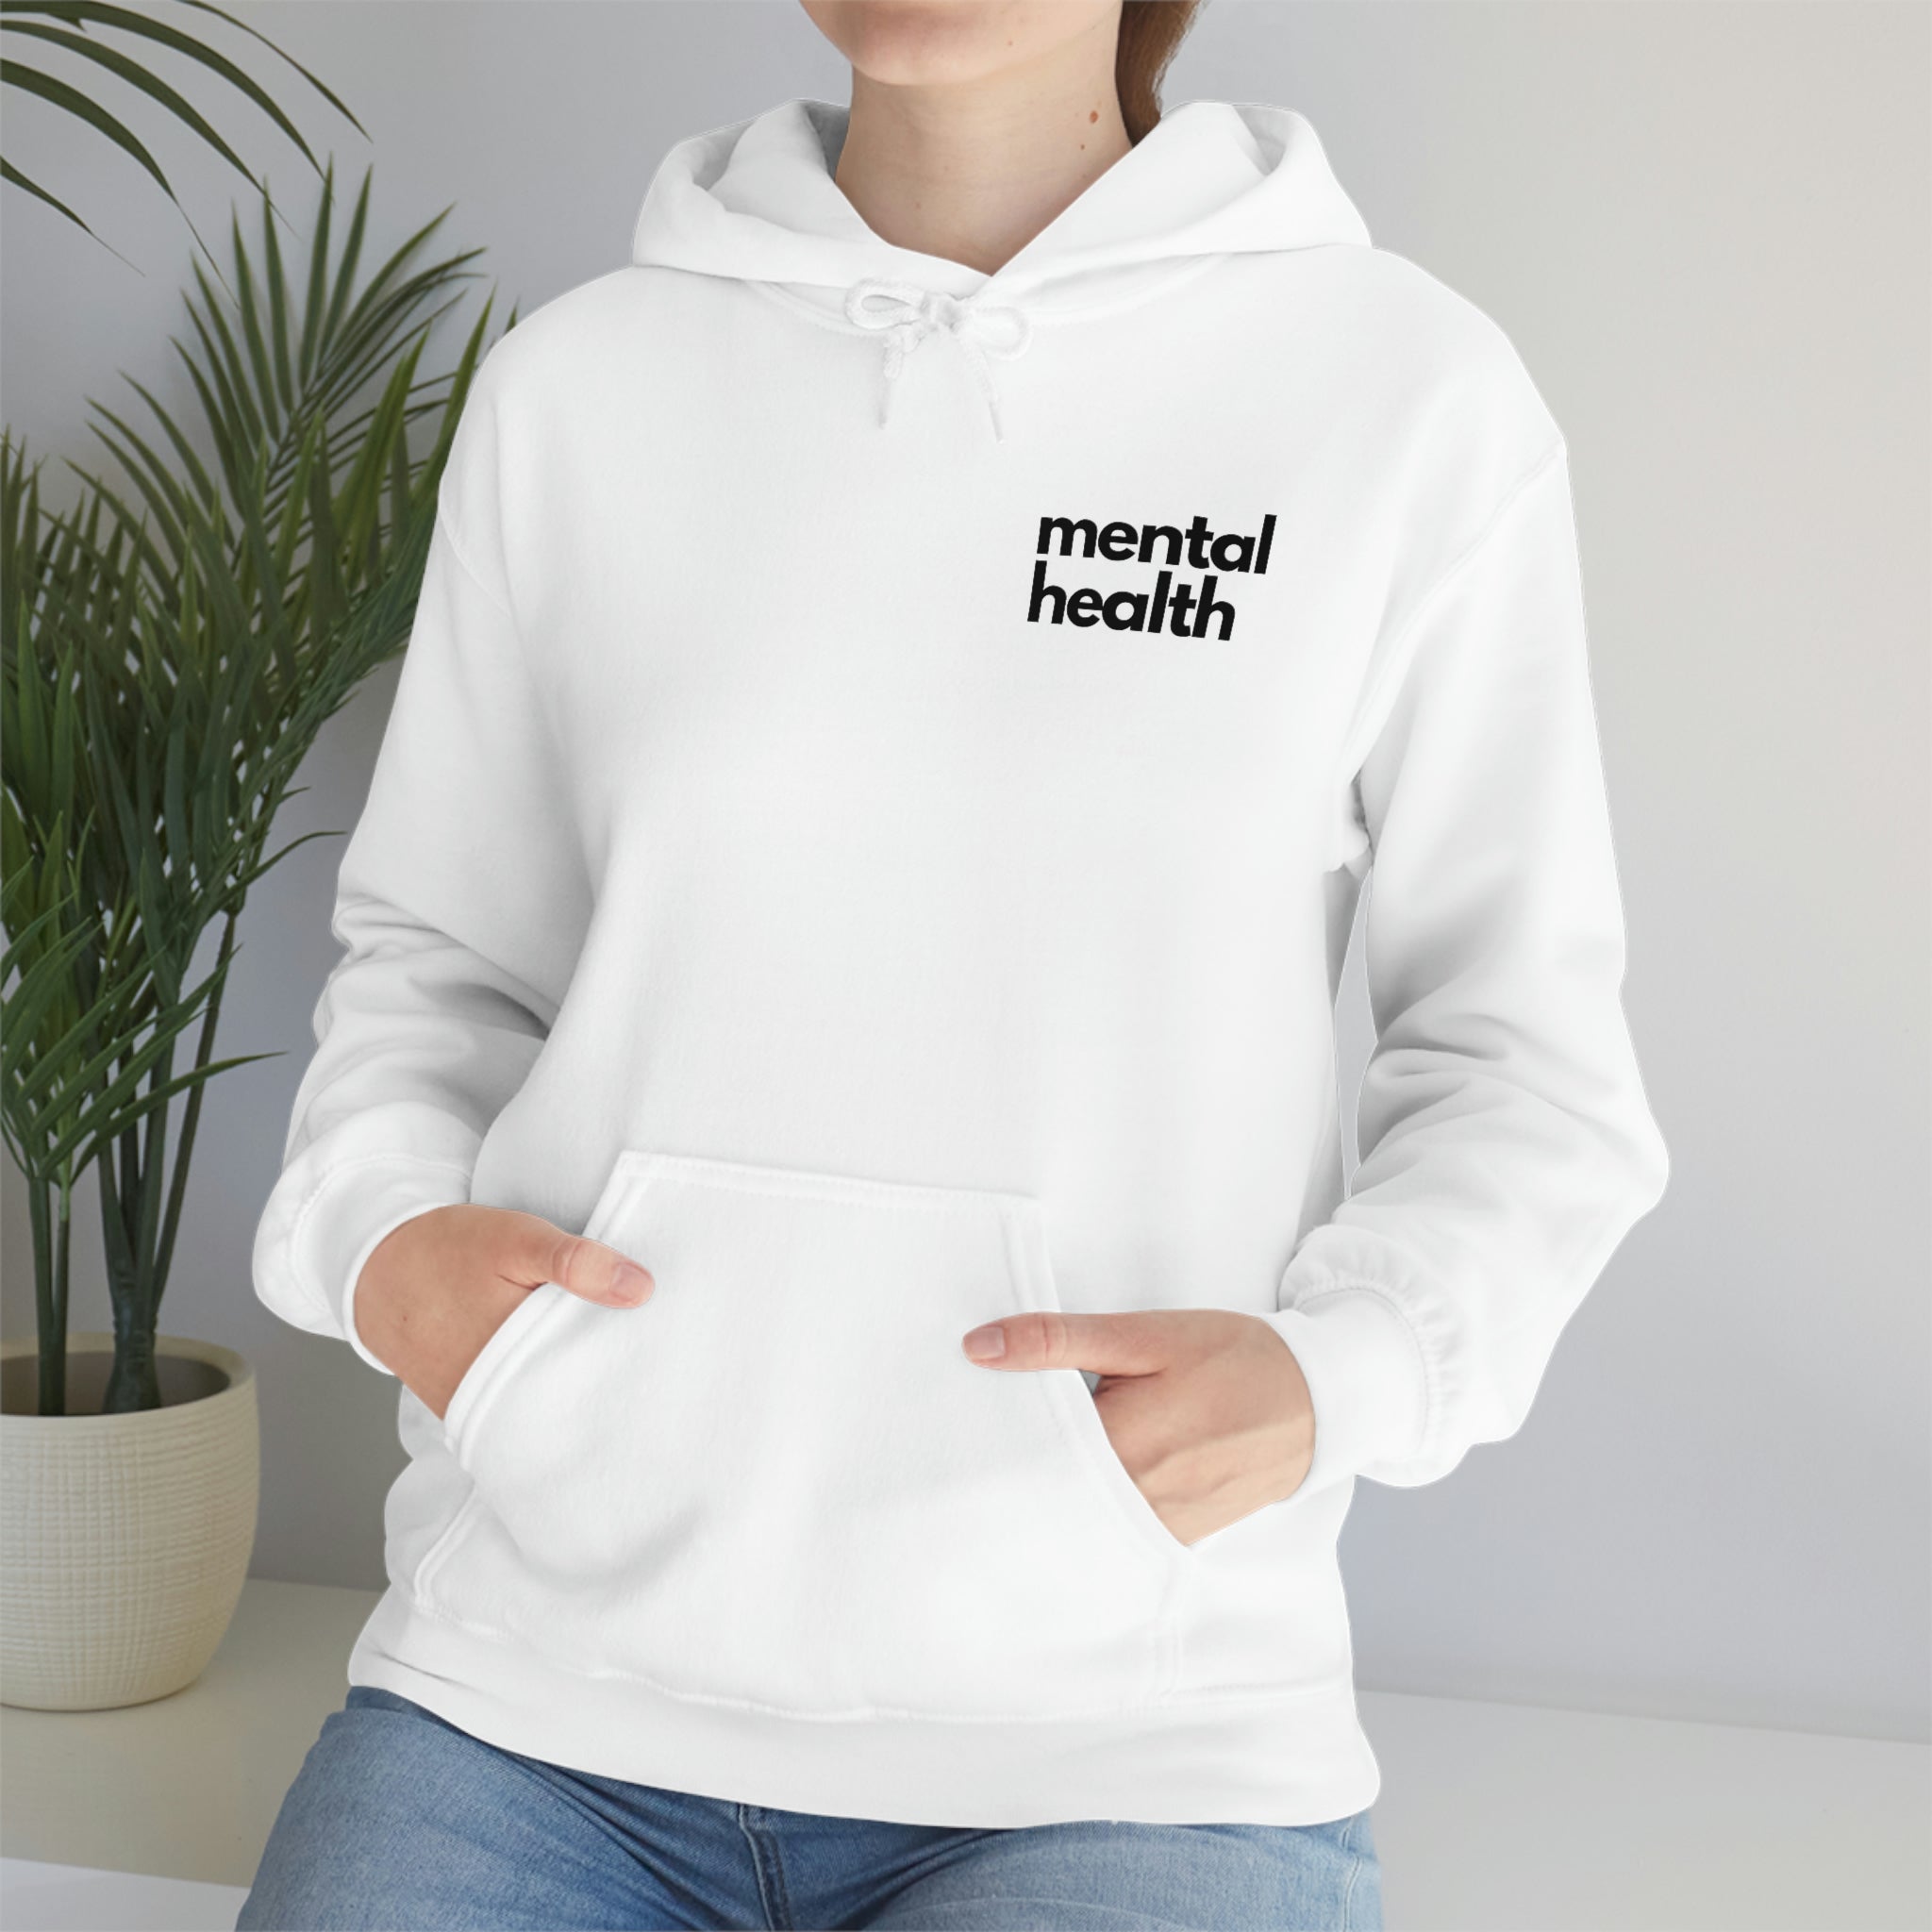 "mental health" Minimalist Unisex Hoodie